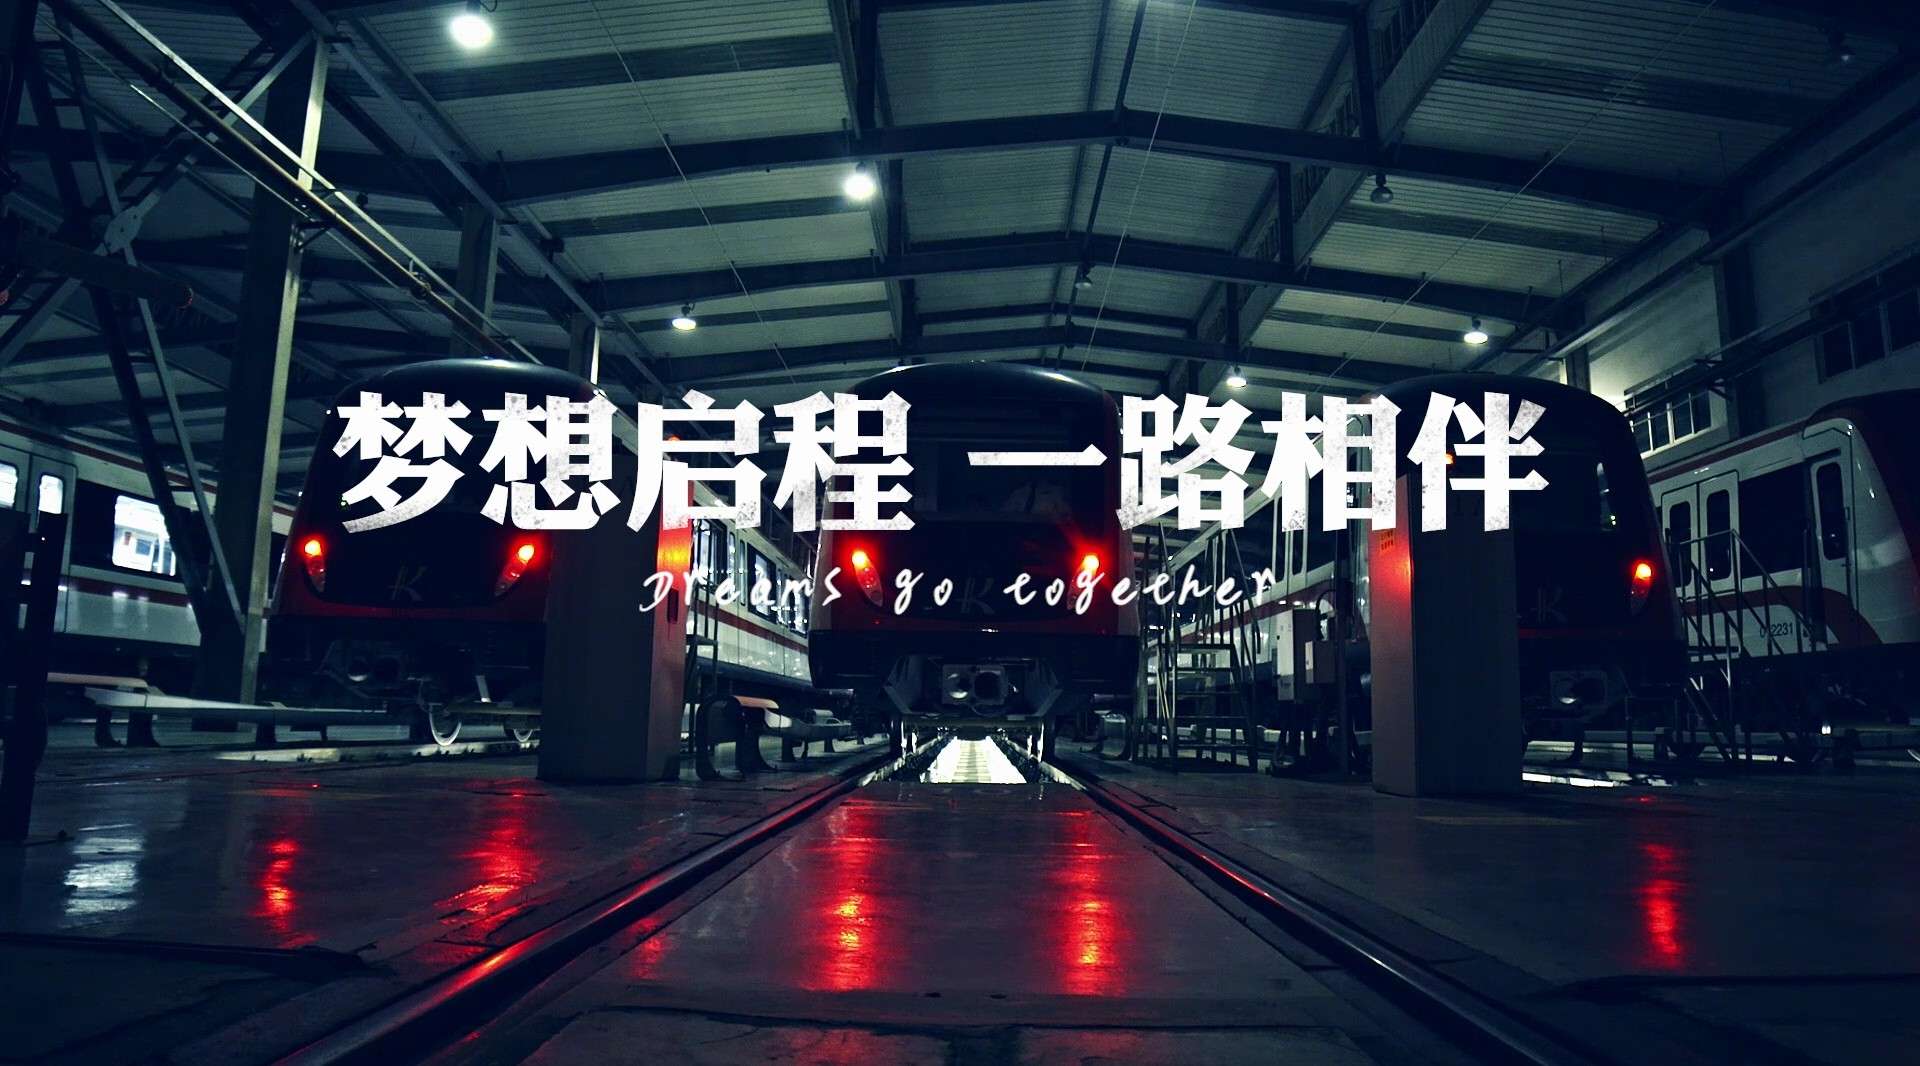 昆明地铁宣传片《梦想启程 一路相伴》